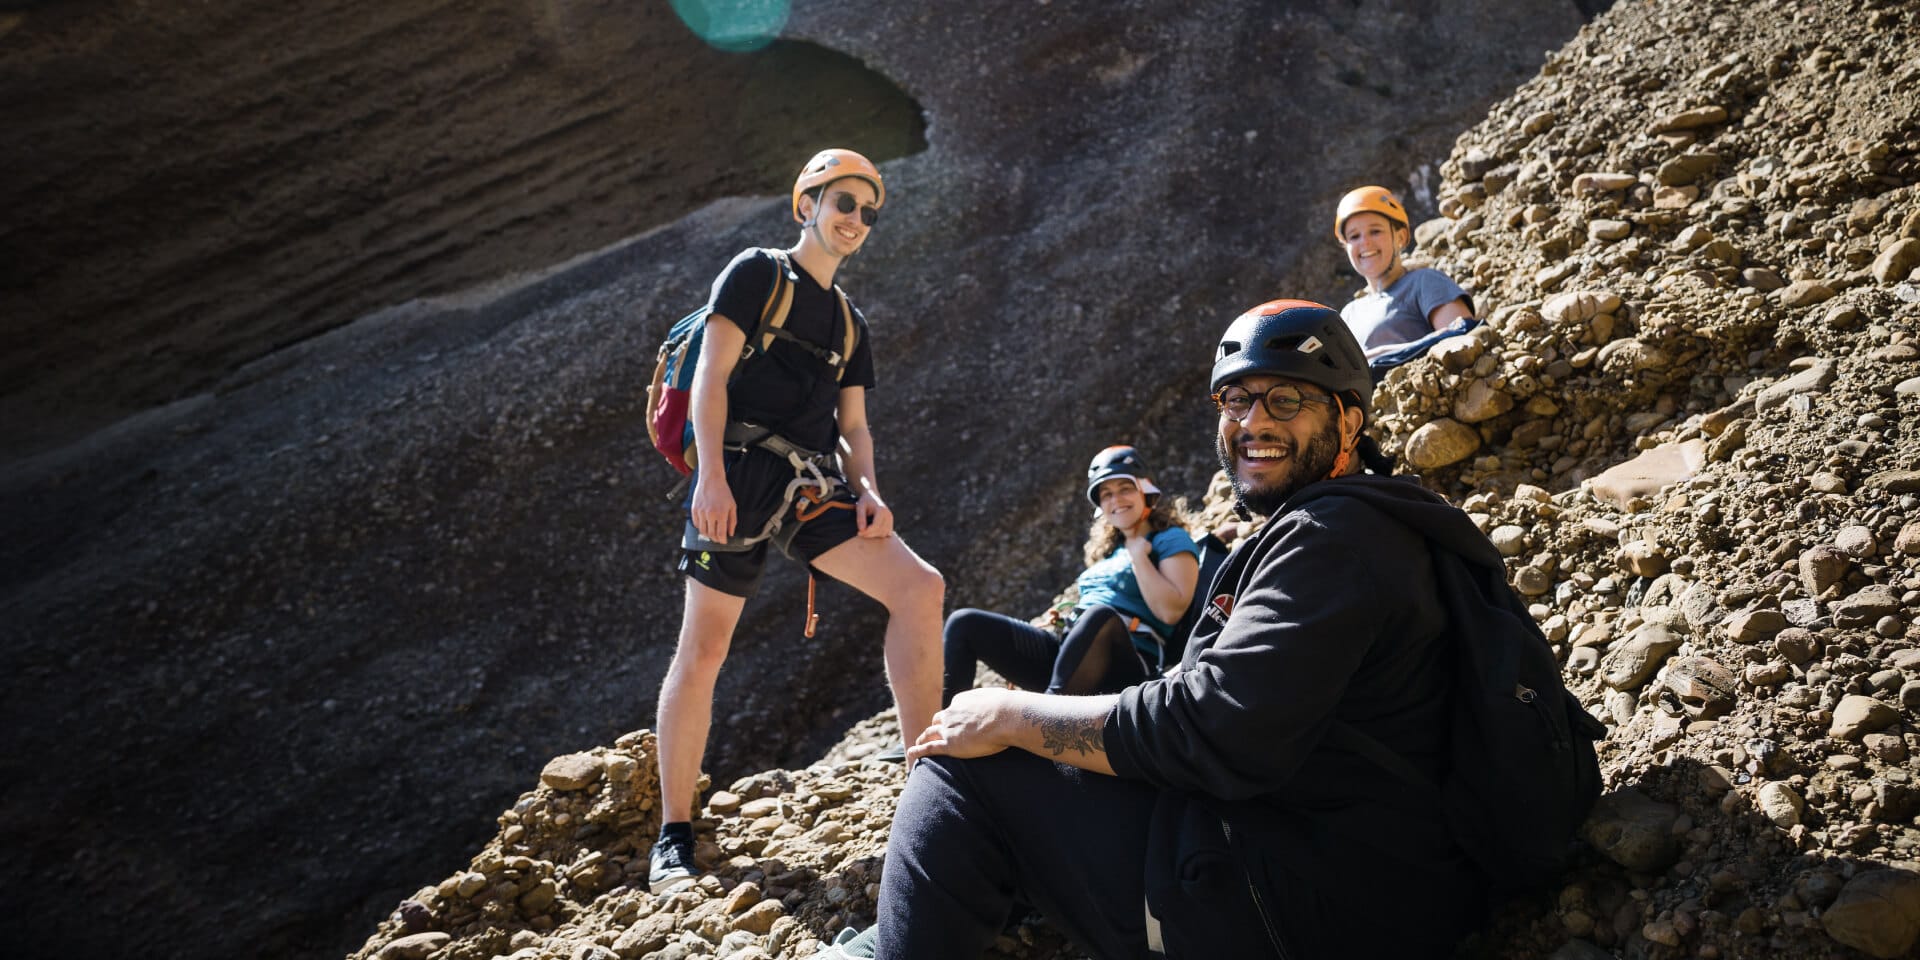 Découvrez "Routes", l'offre d'escalade outdoor de Climbing District : vivez des aventures uniques en bloc et en falaise. Les calanques de Maugel.